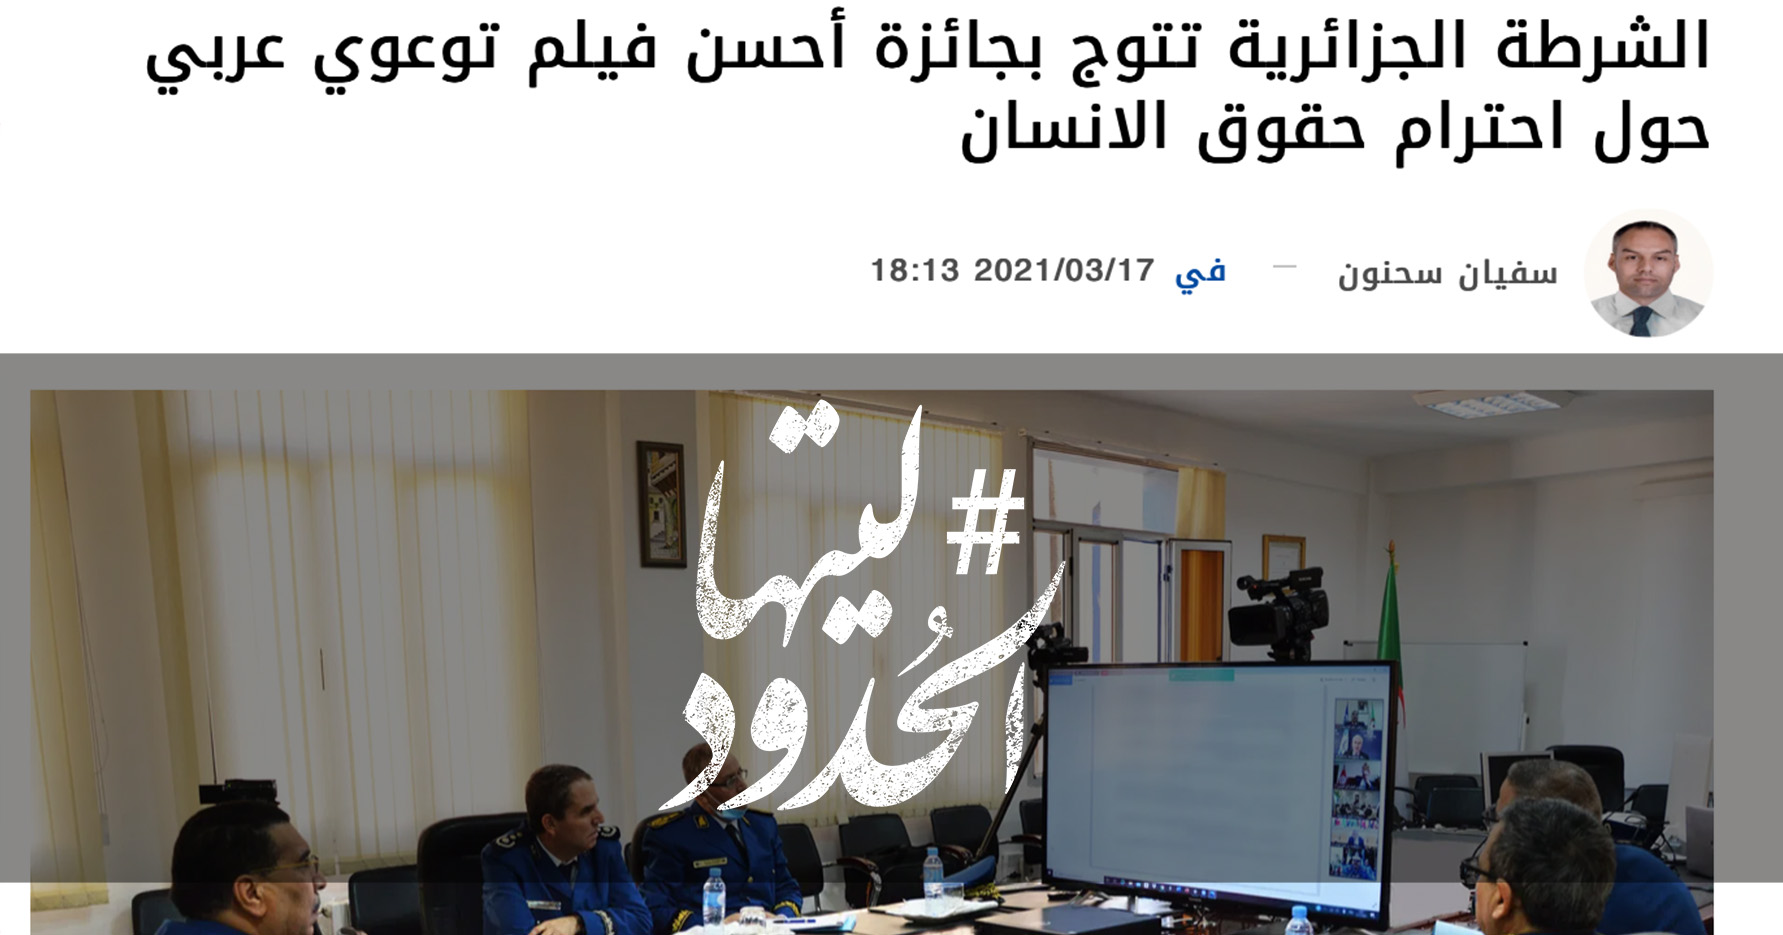 صورة الشرطة الجزائرية تتوج بجائزة أحسن فيلم توعوي عربي حول احترام حقوق الانسان